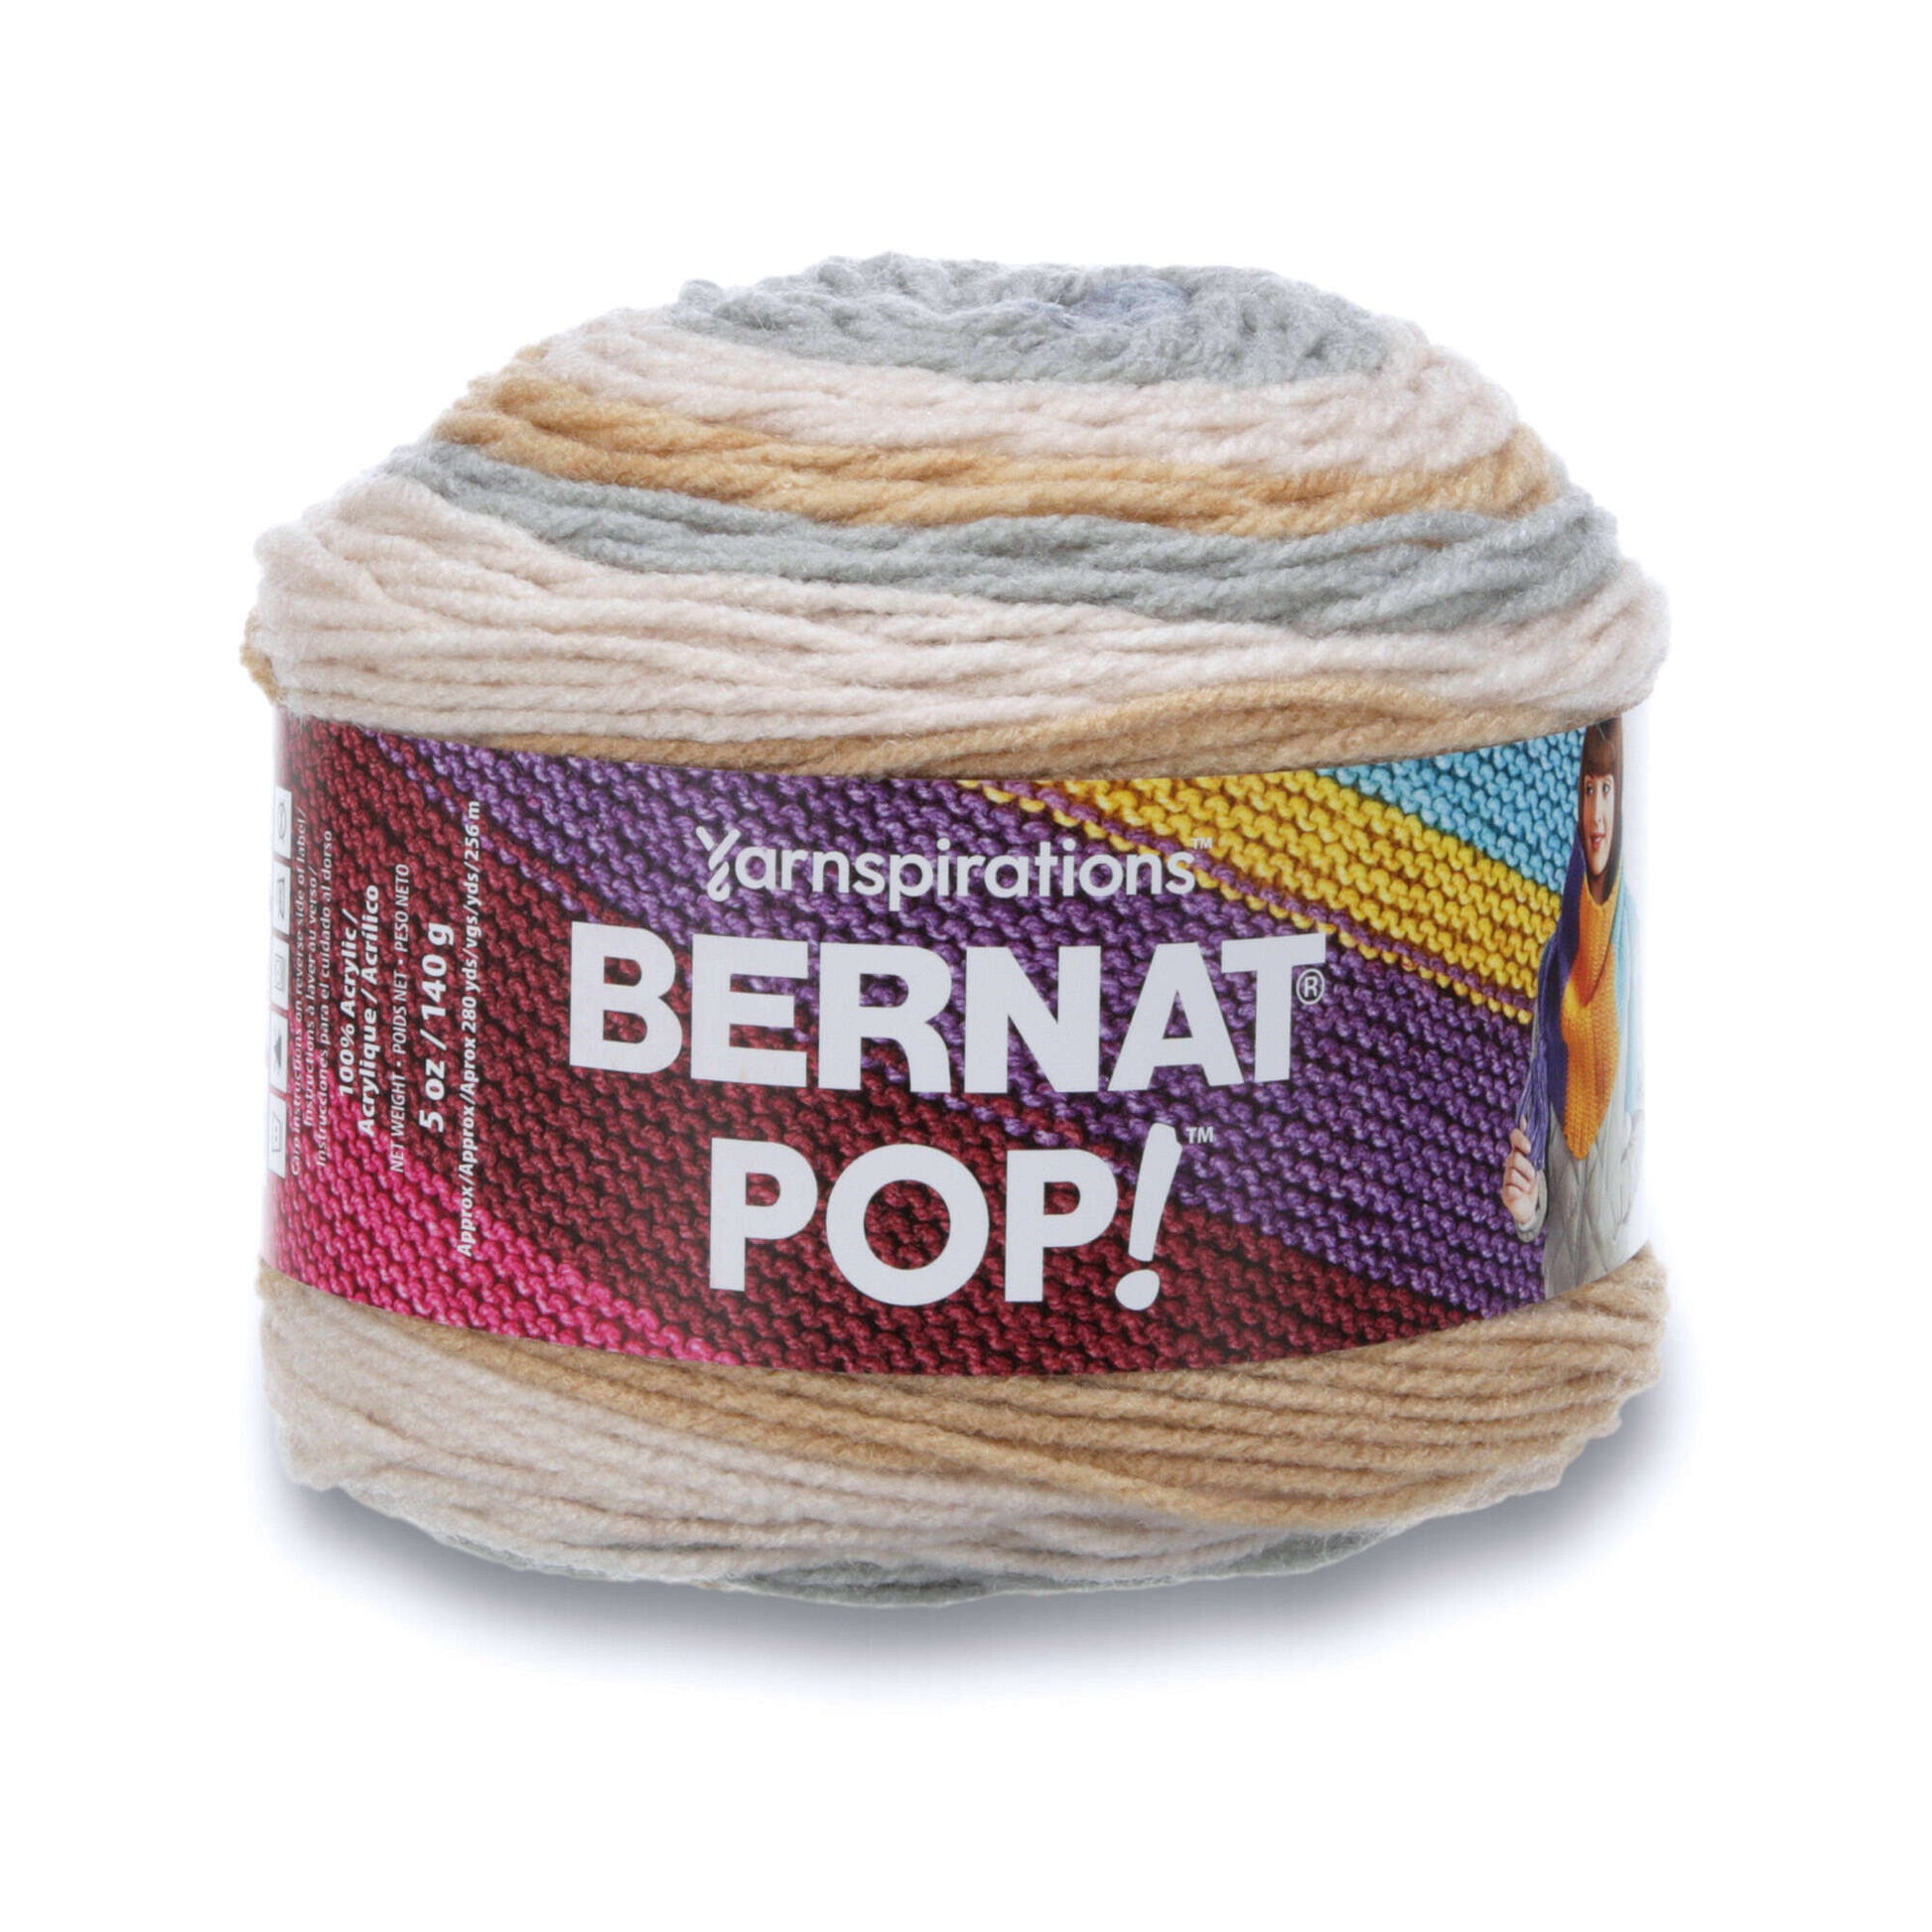 Bernat Pop! Yarn - Clearance Shades